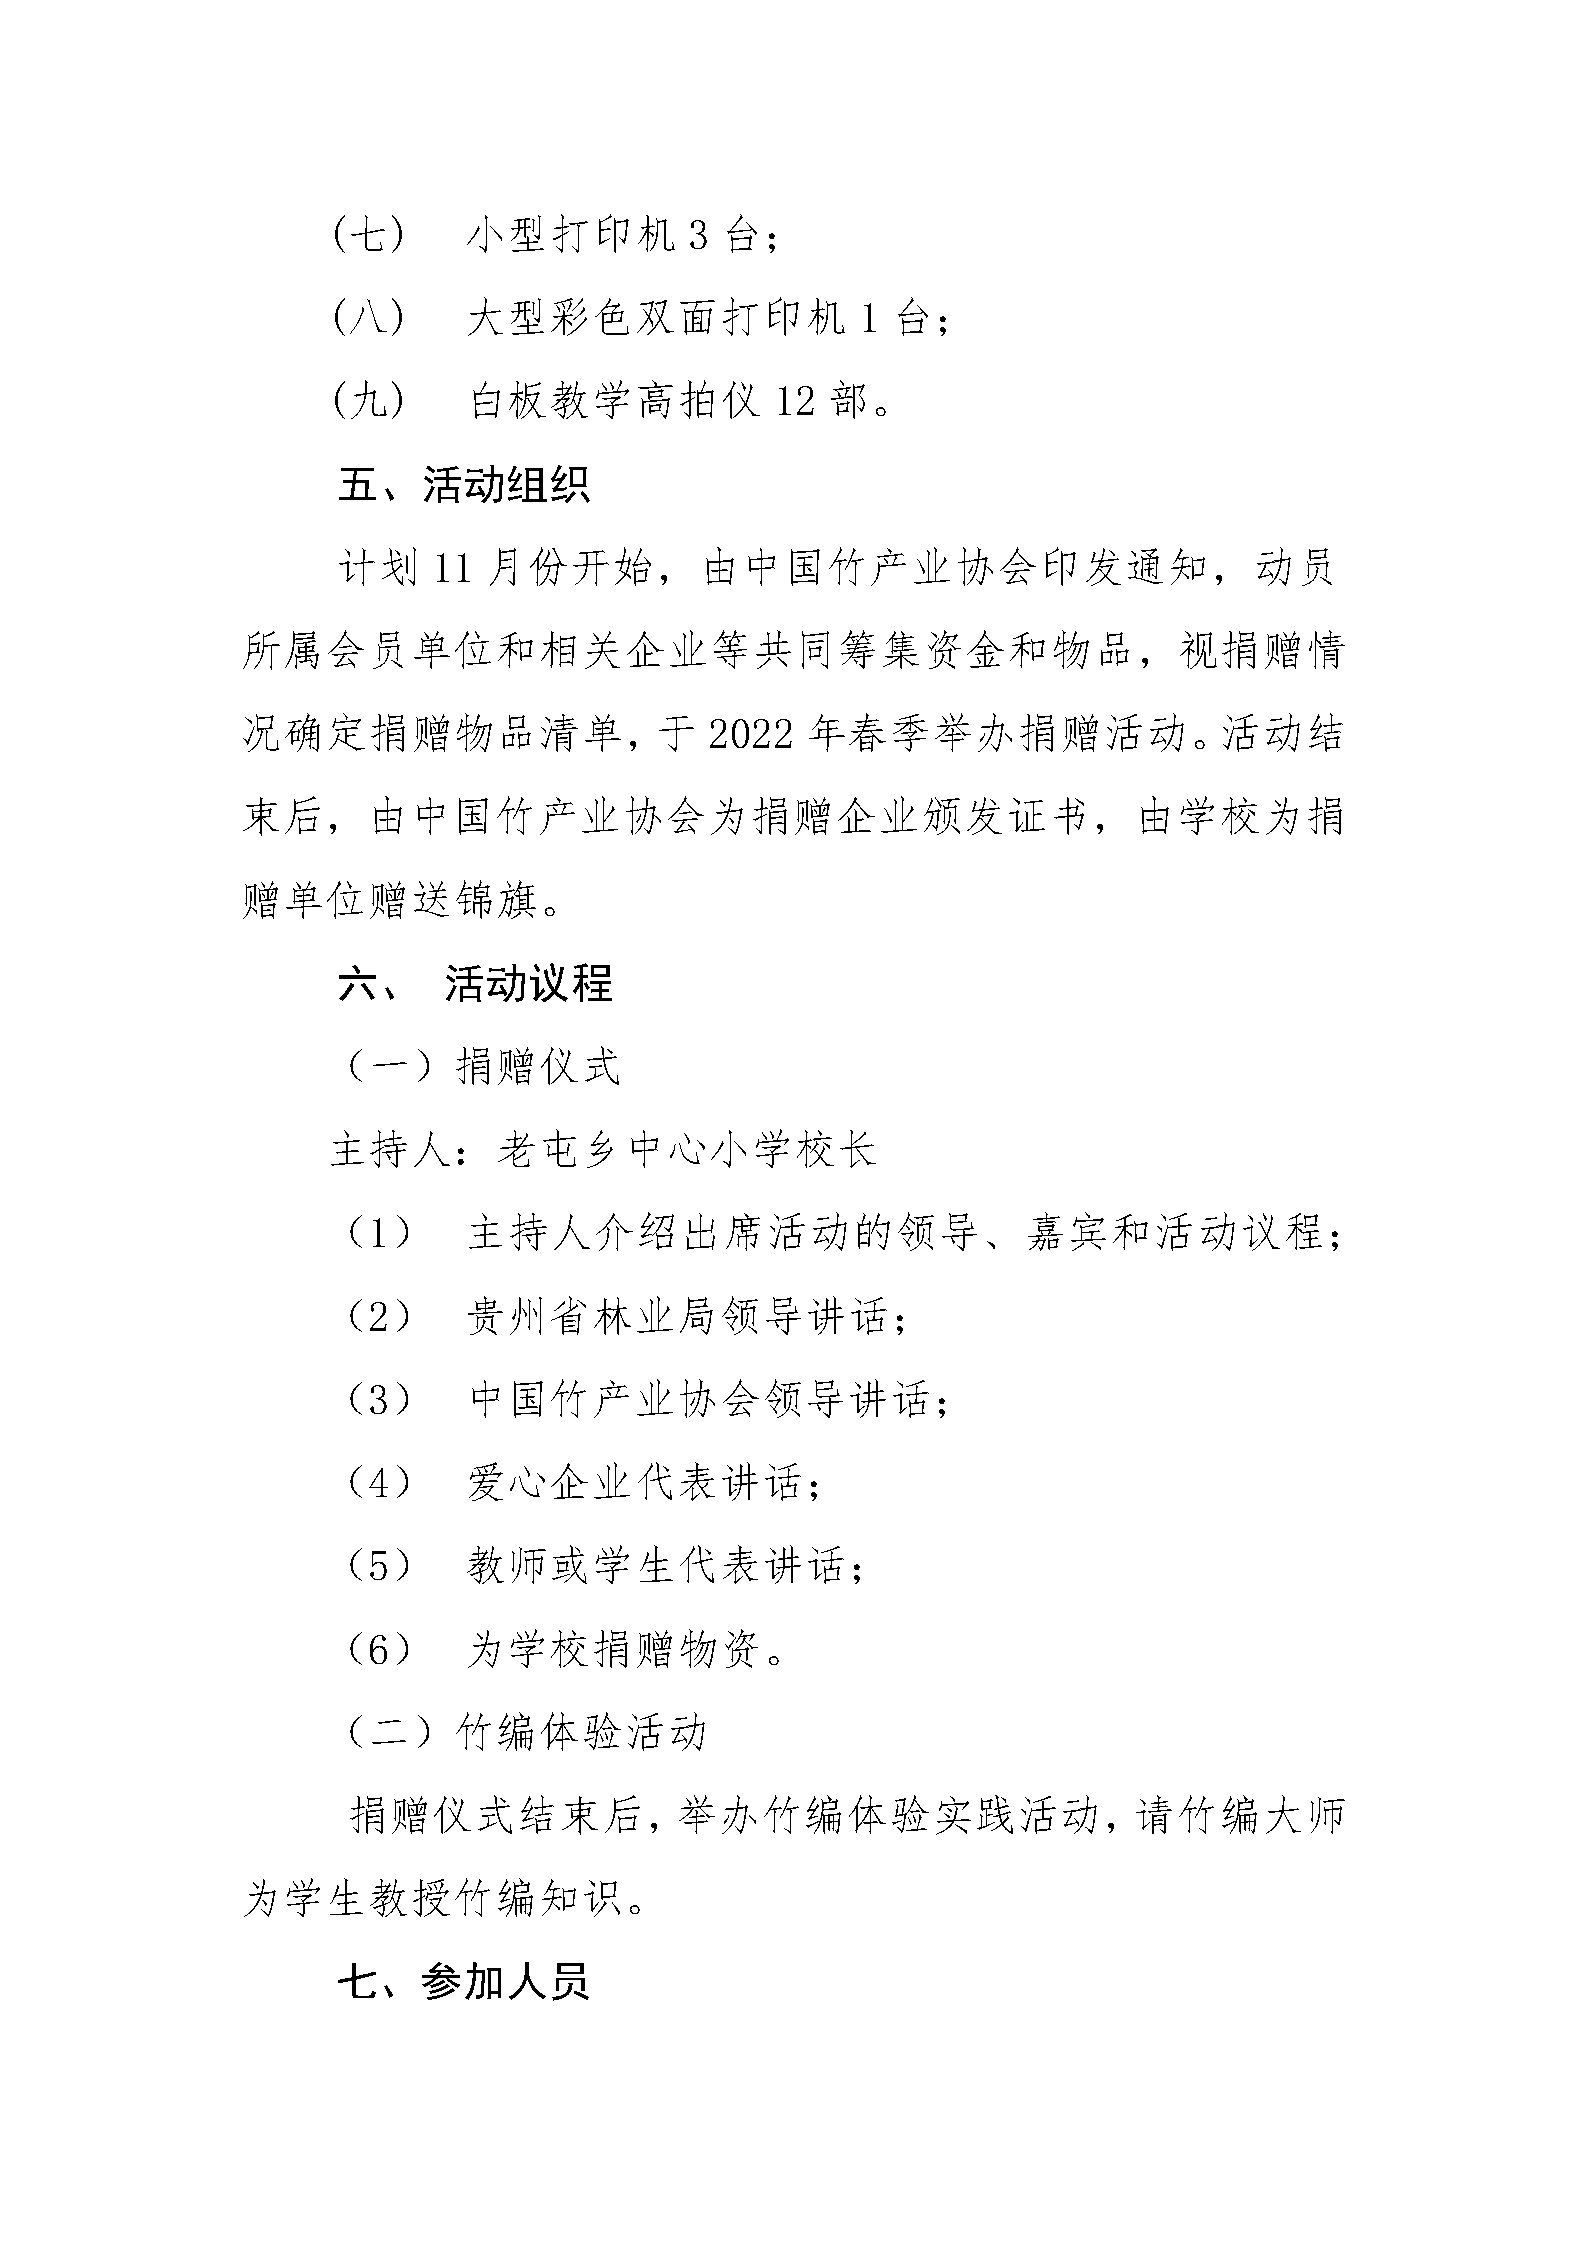 中国竹产业协会公益助学活动方案_Page3.jpg